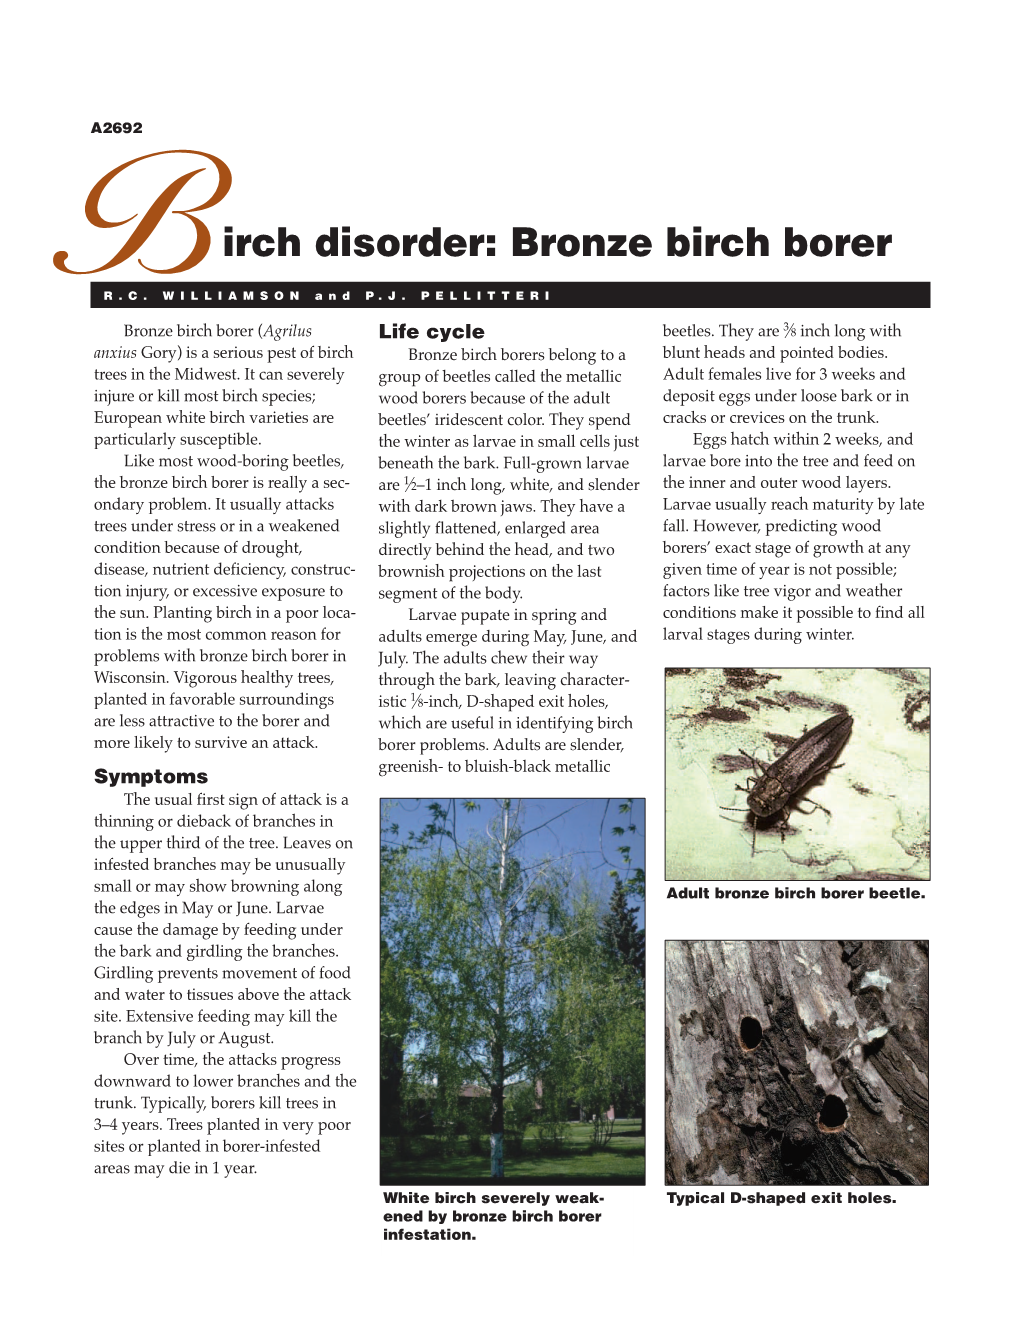 Bronze Birch Borer (A2692)